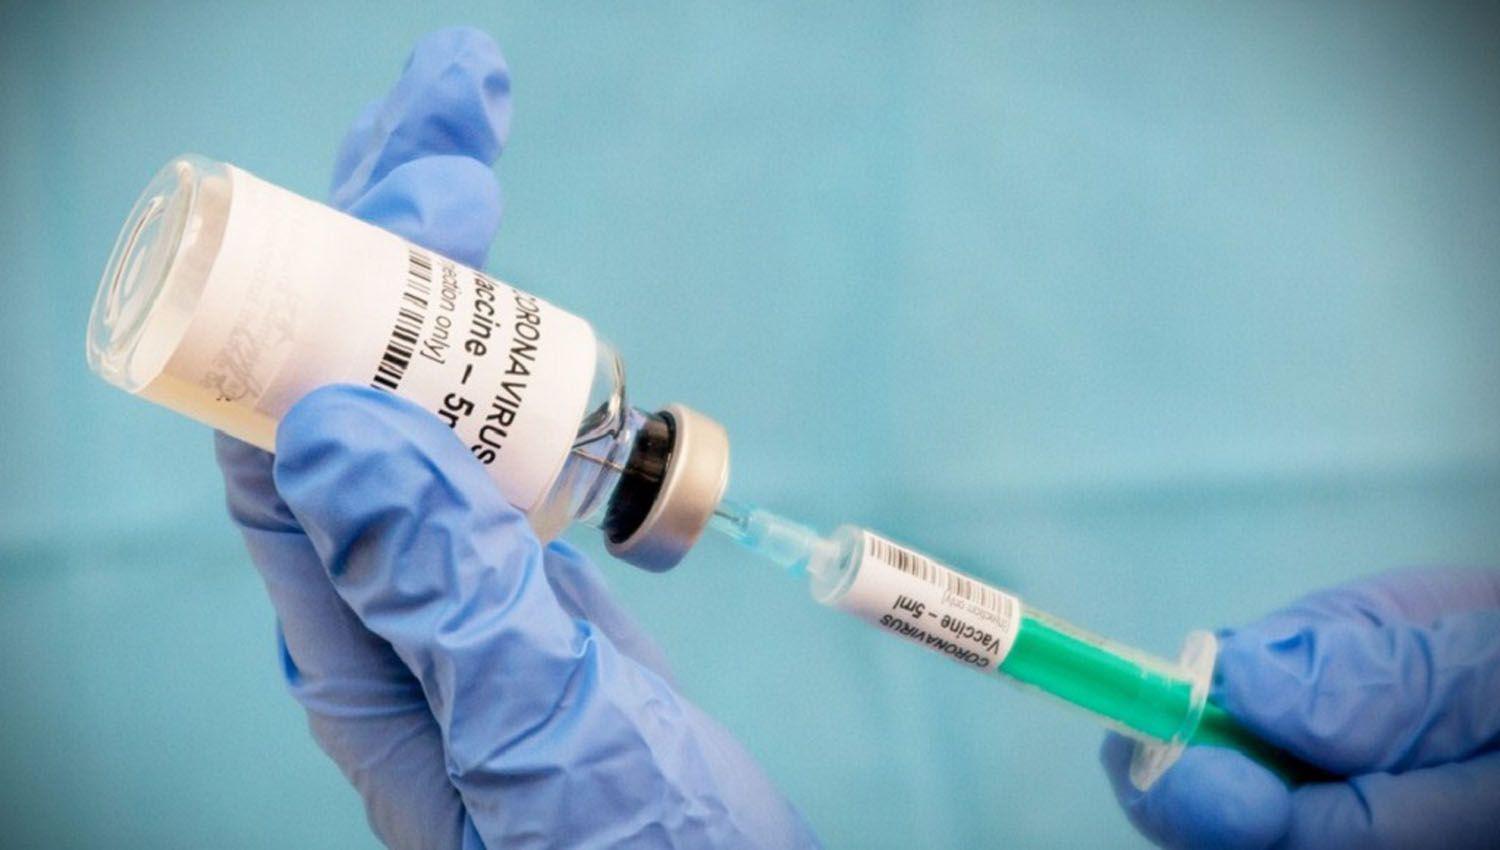 Estados Unidos iniciariacutea la vacunacioacuten contra el coronavirus en 20 diacuteas